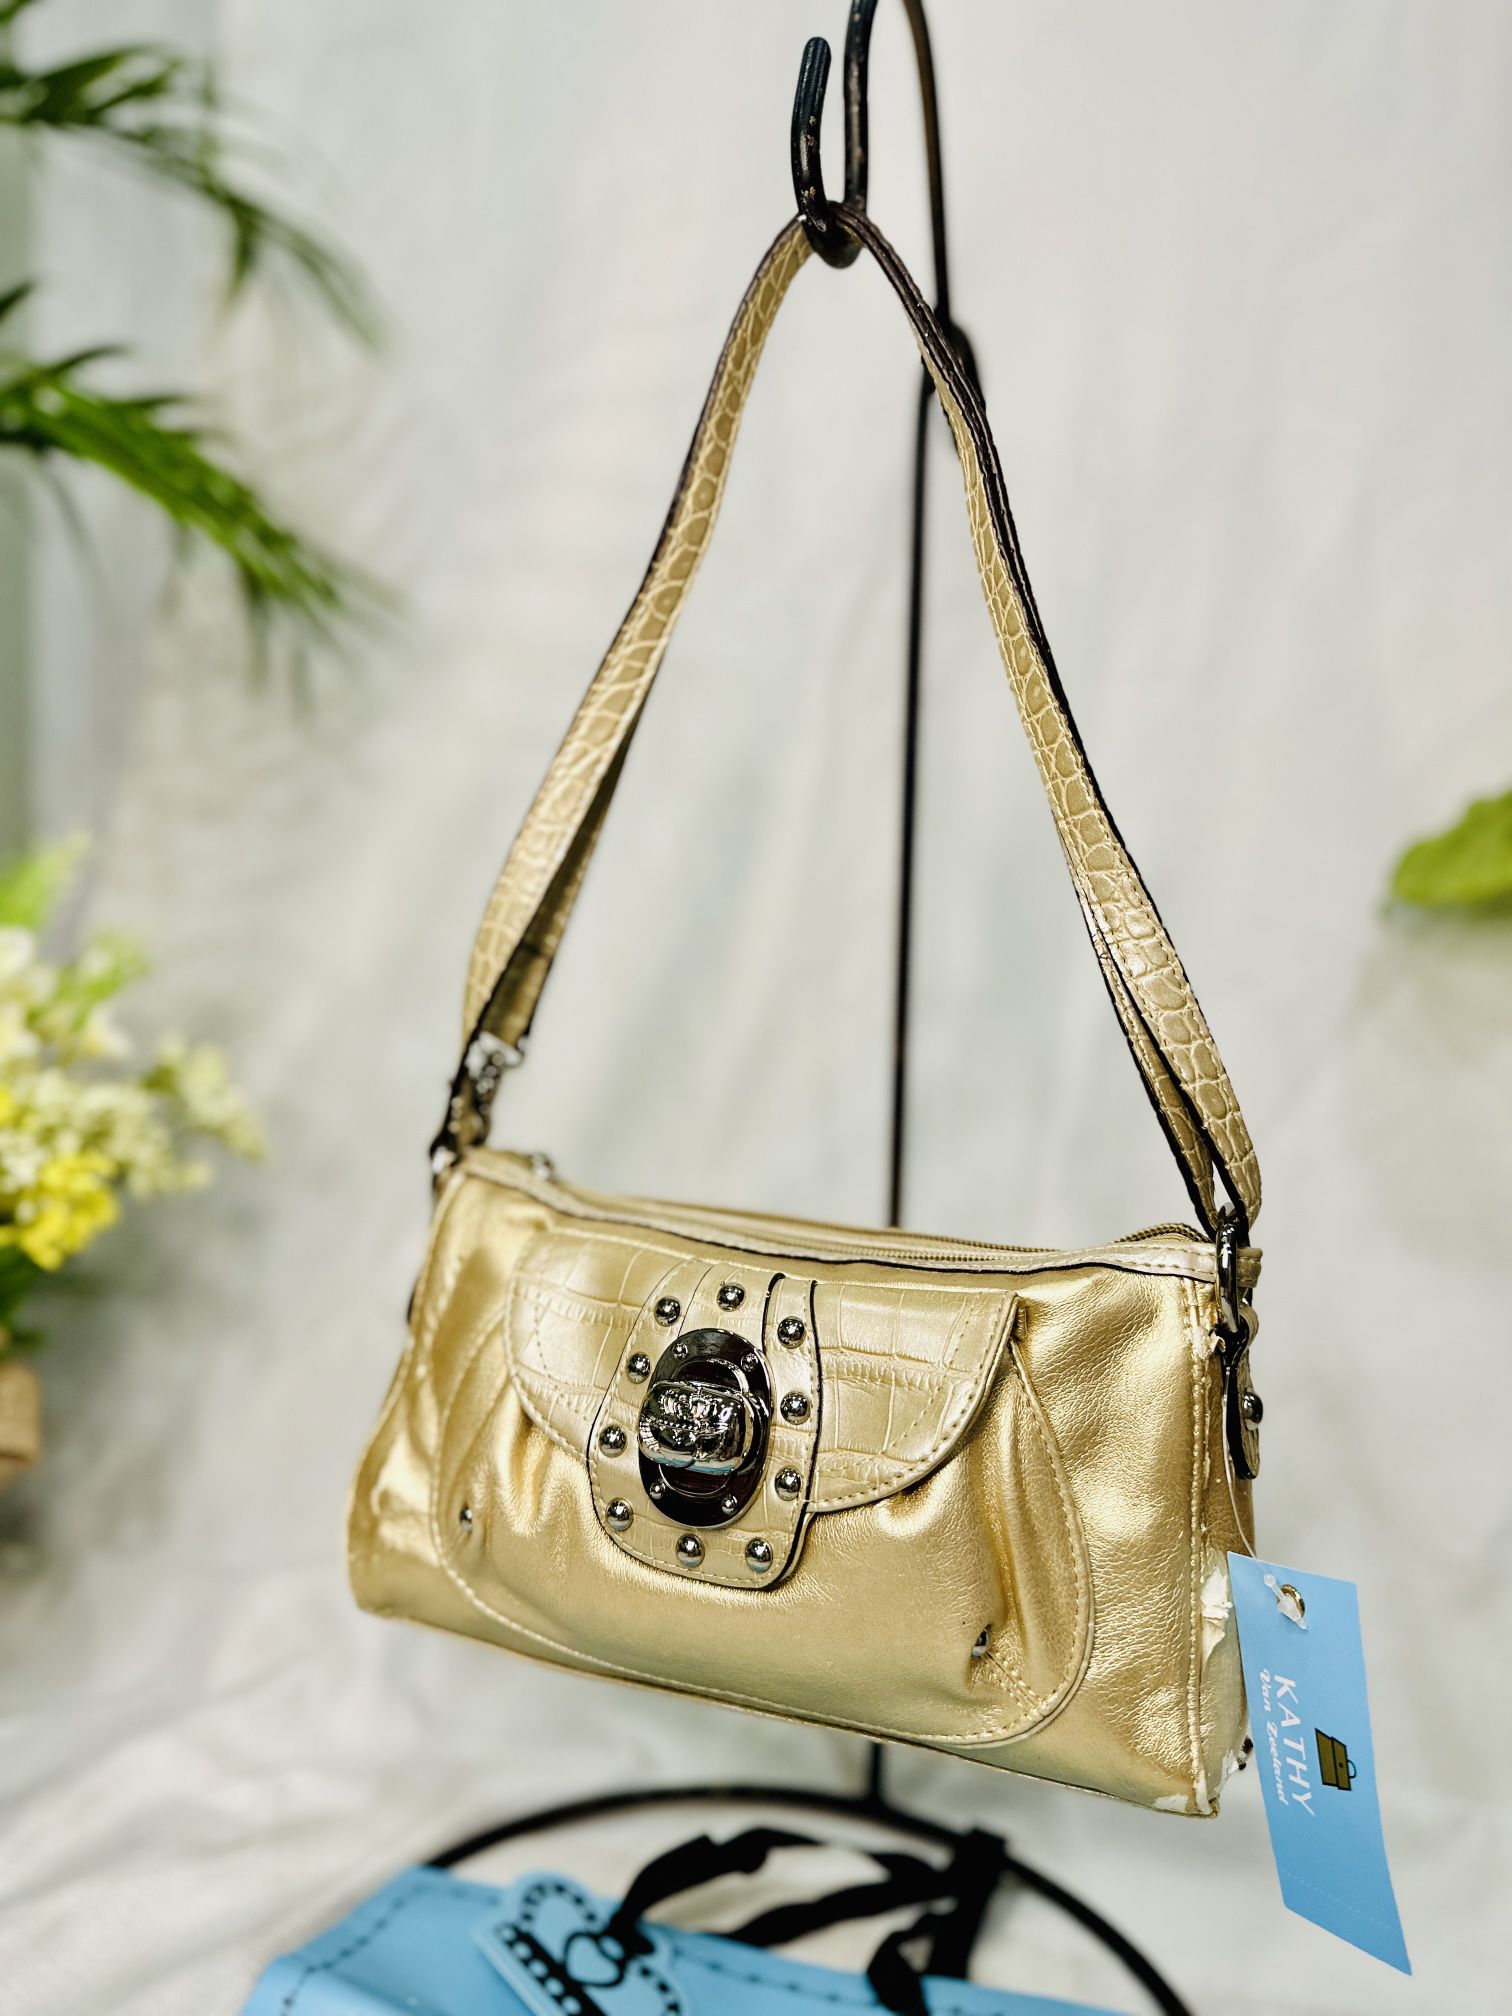 Kathy Van Zeeland -Handbag- New for Sale in Fredericksburg, VA - OfferUp